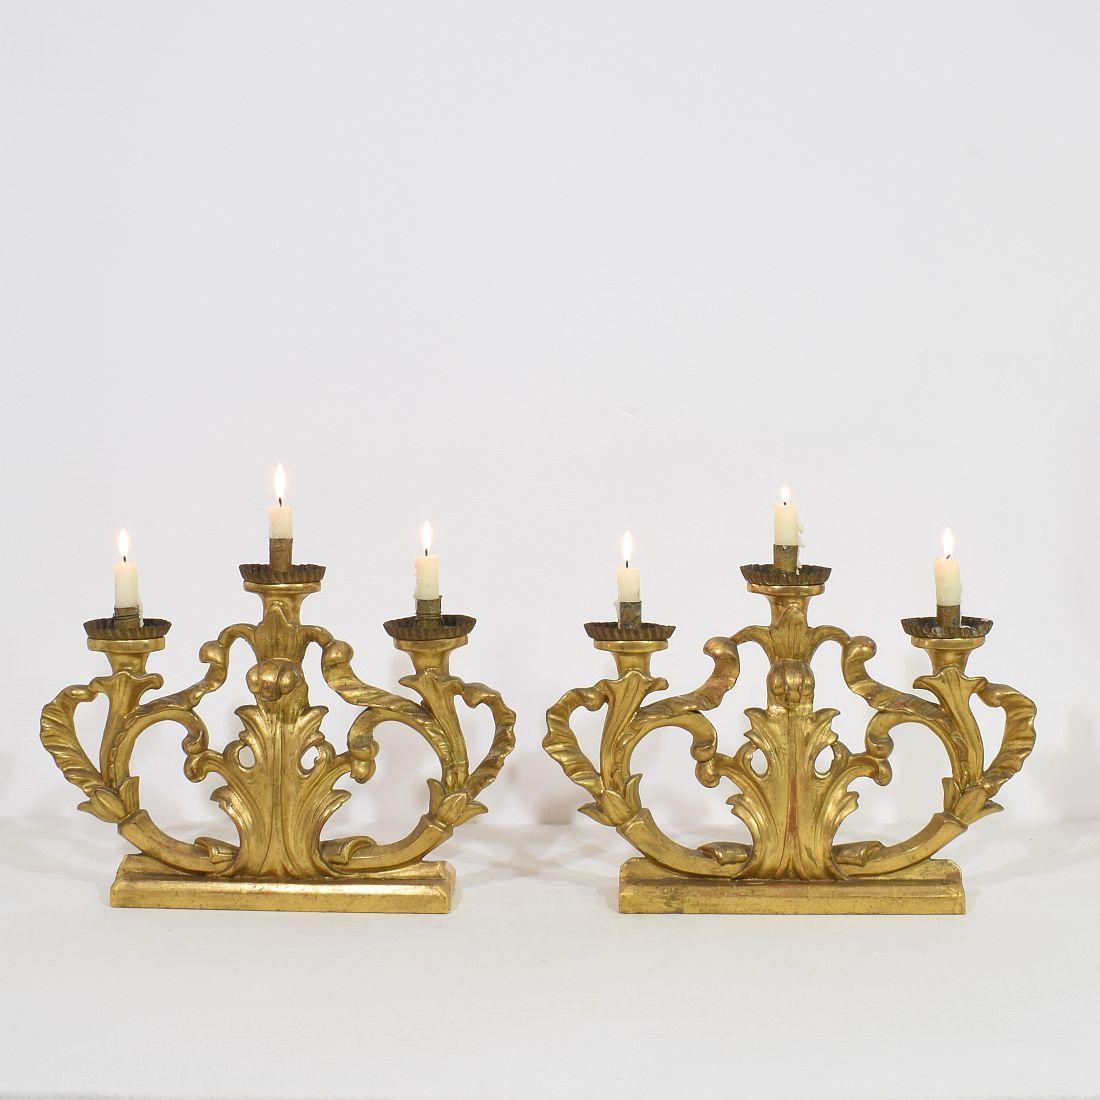 Einzigartige barocke Kerzenhalter aus Goldholz für insgesamt 6 Kerzen, Italien, ca. 1750-1780. Verwittert, Reparaturen und Verluste.
Weitere Bilder sind auf Anfrage erhältlich. Messung individuell.